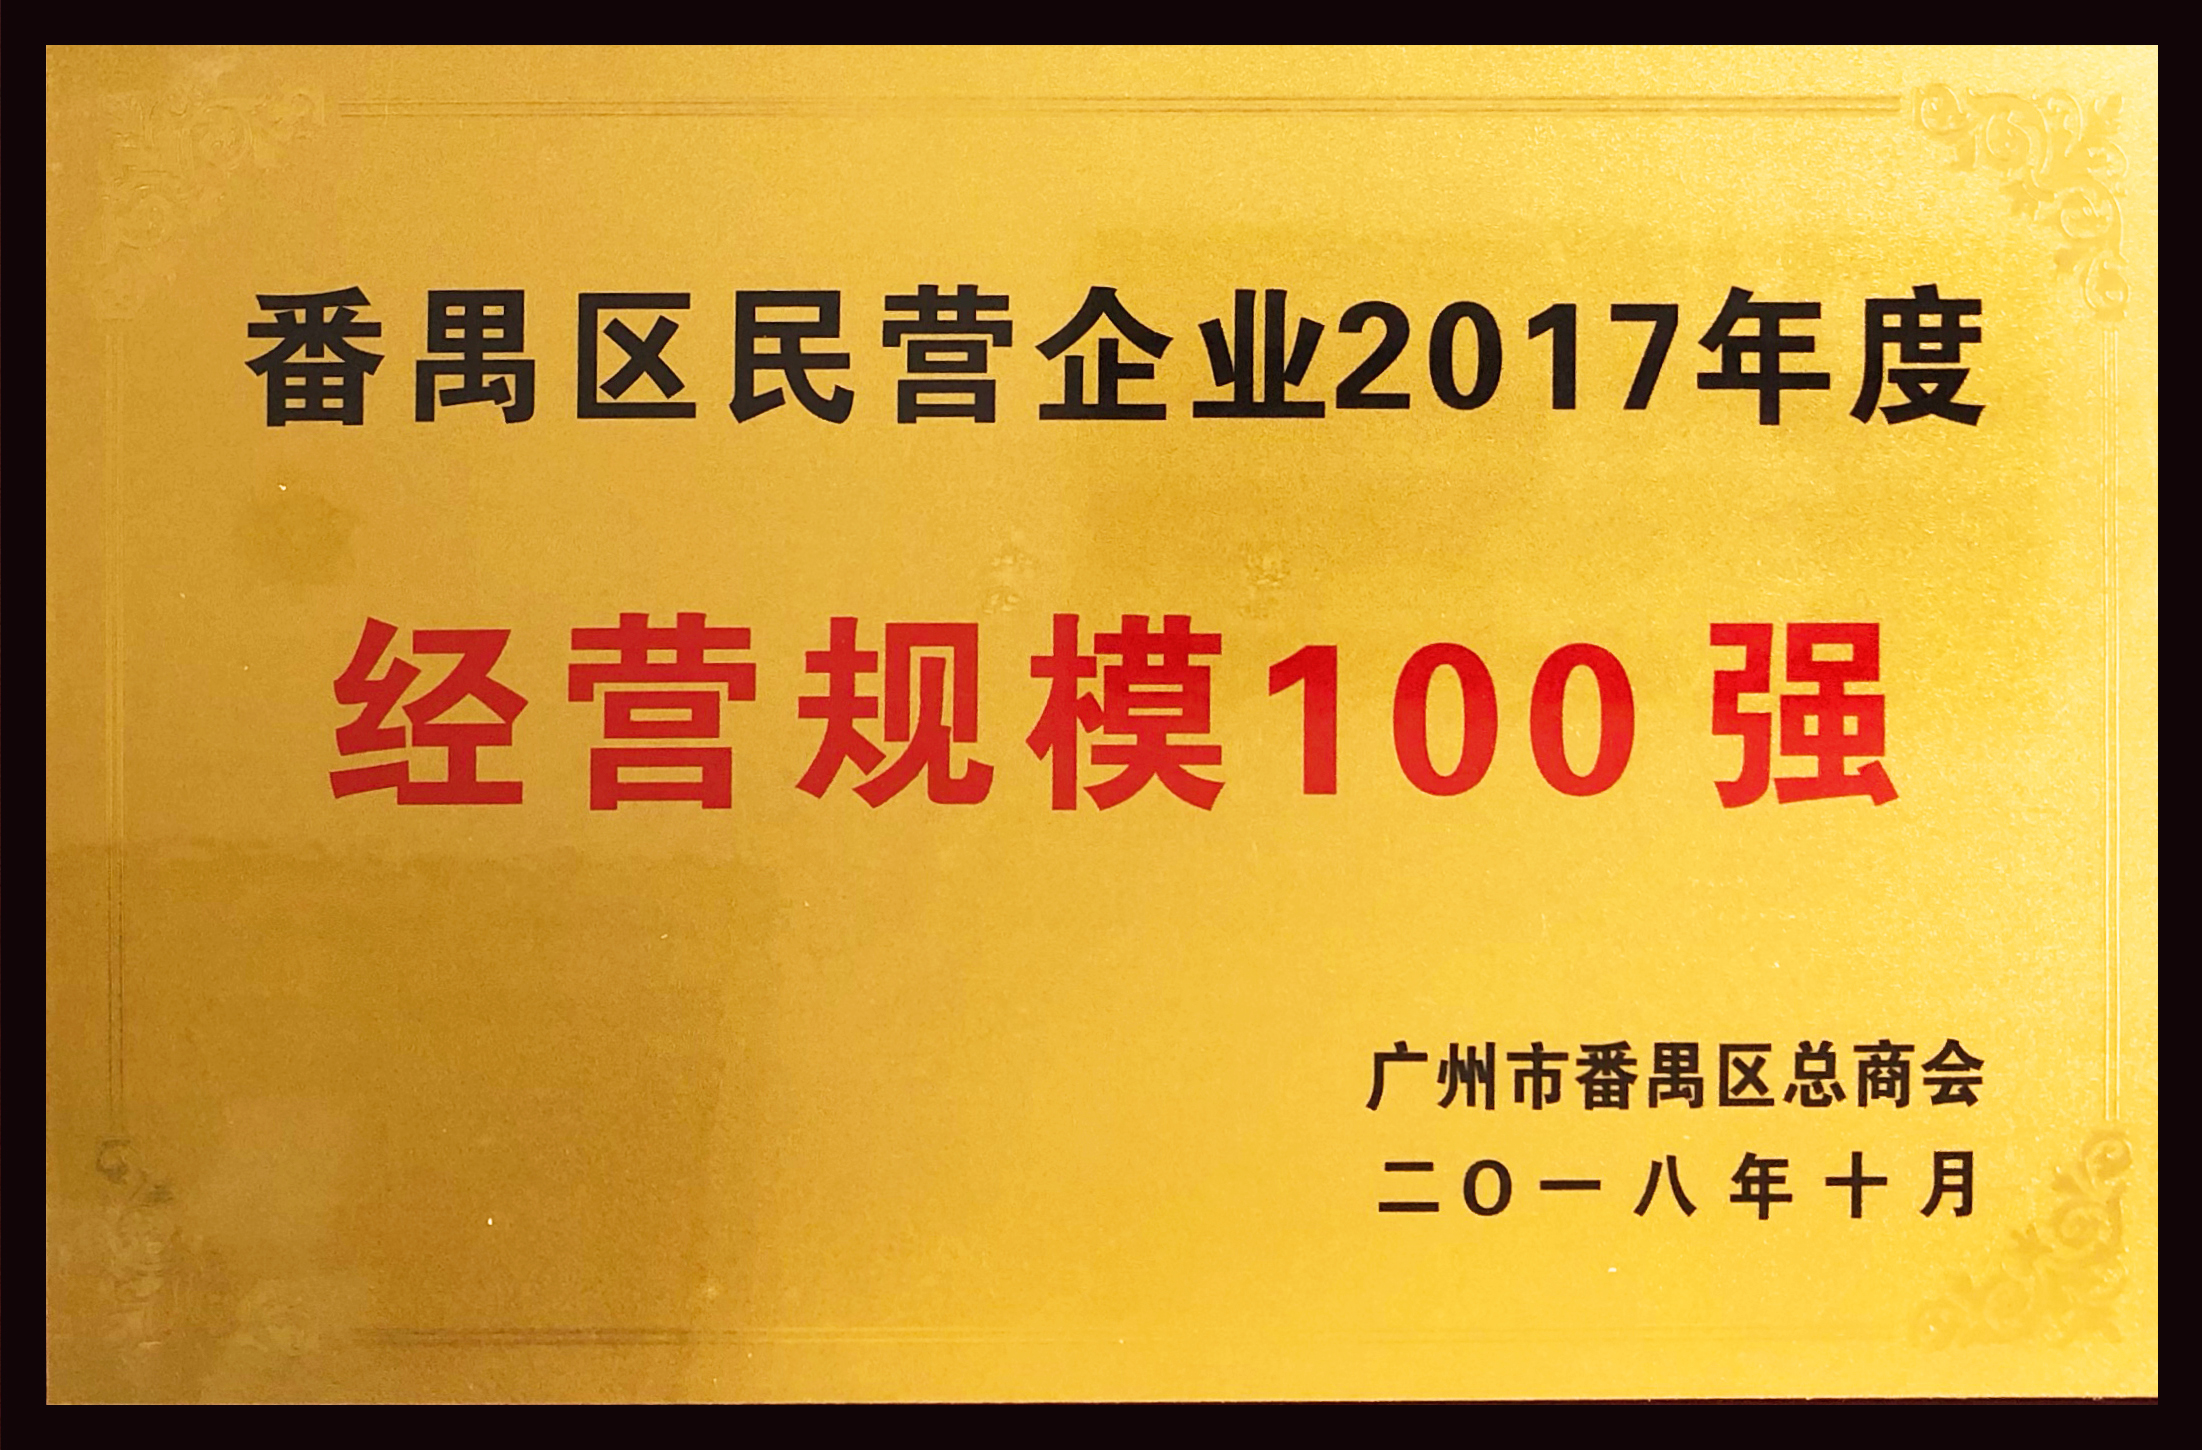 番禺区民营企业2017年度经营规模100强